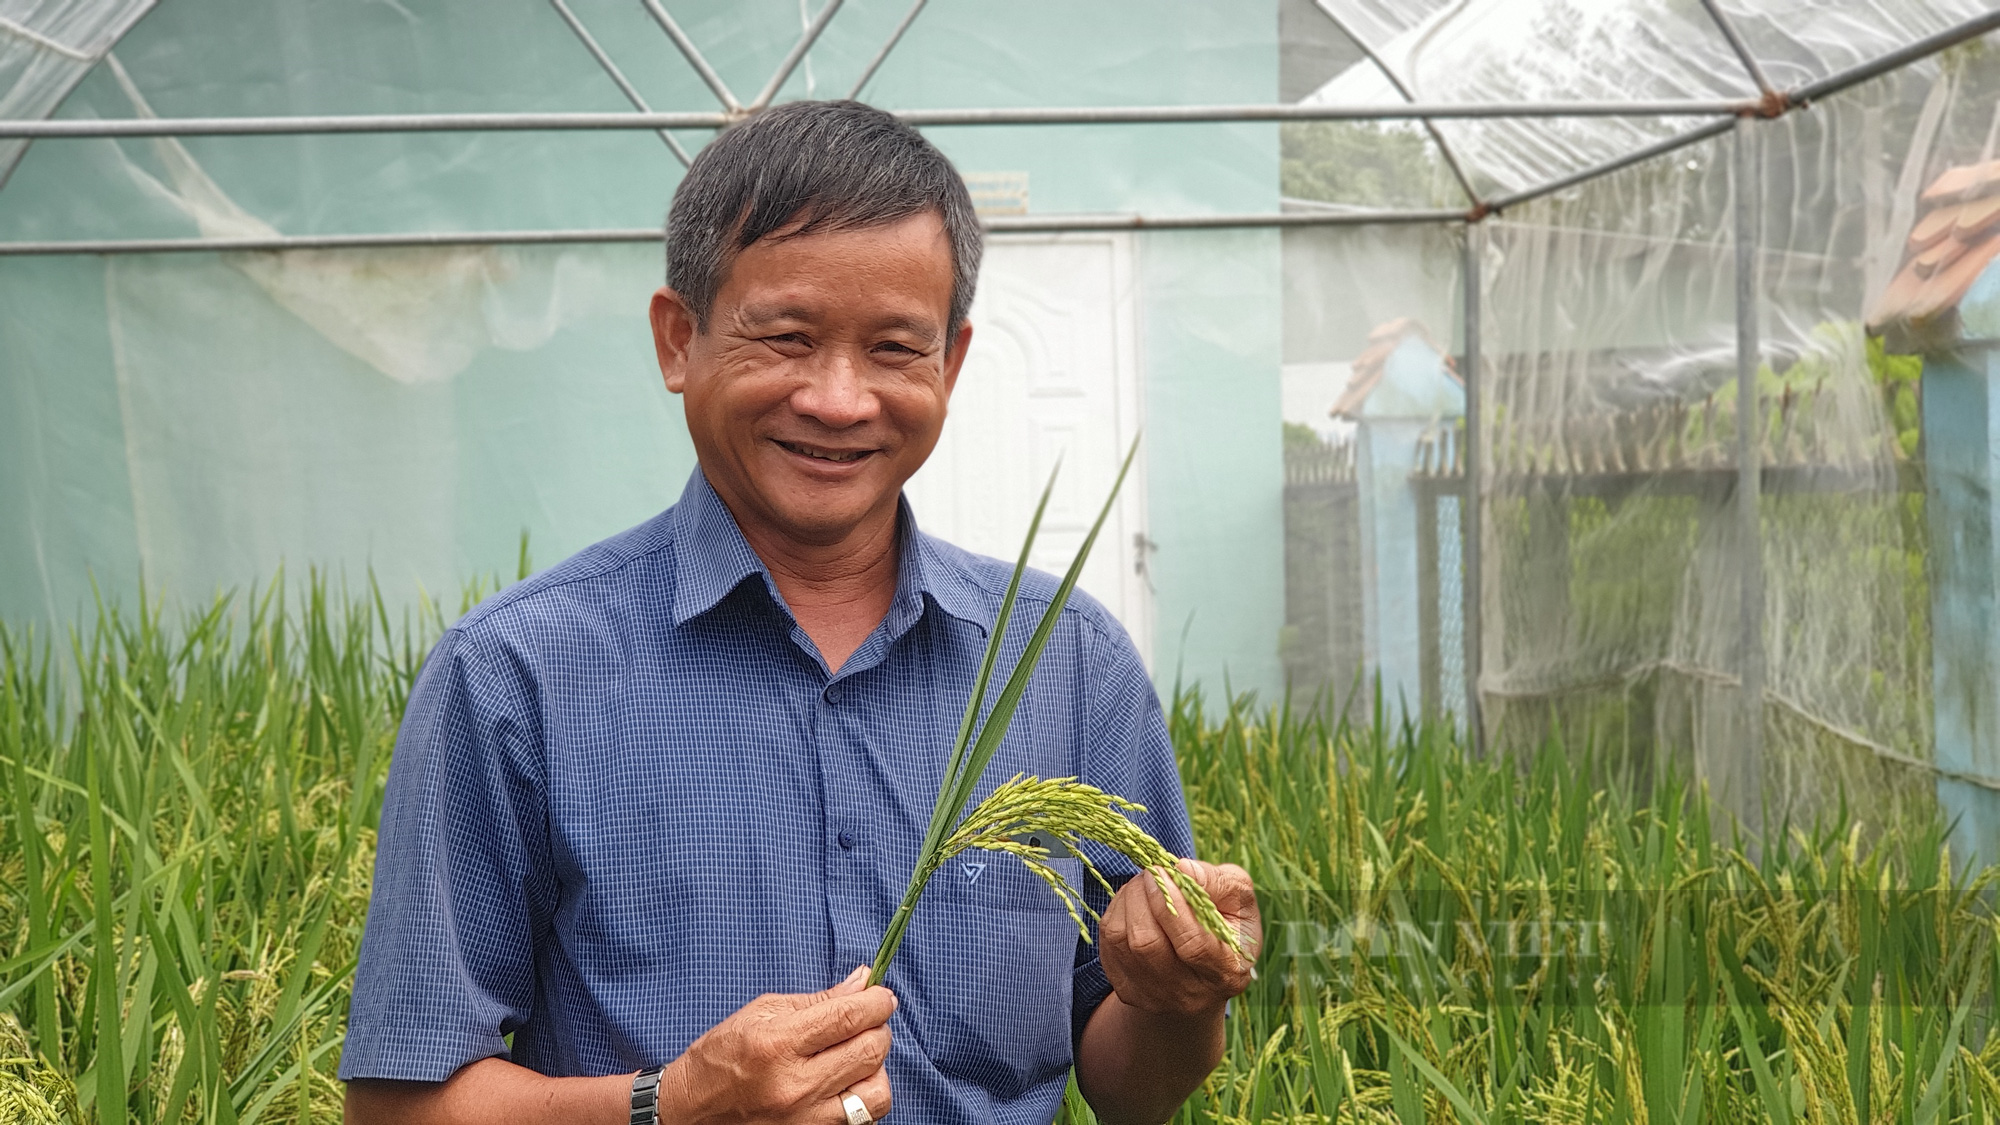 Nông dân xuất sắc 2021 ở Đồng Tháp là ông nông dân lai tạo giống lúa có dinh dưỡng rất cao - Ảnh 1.